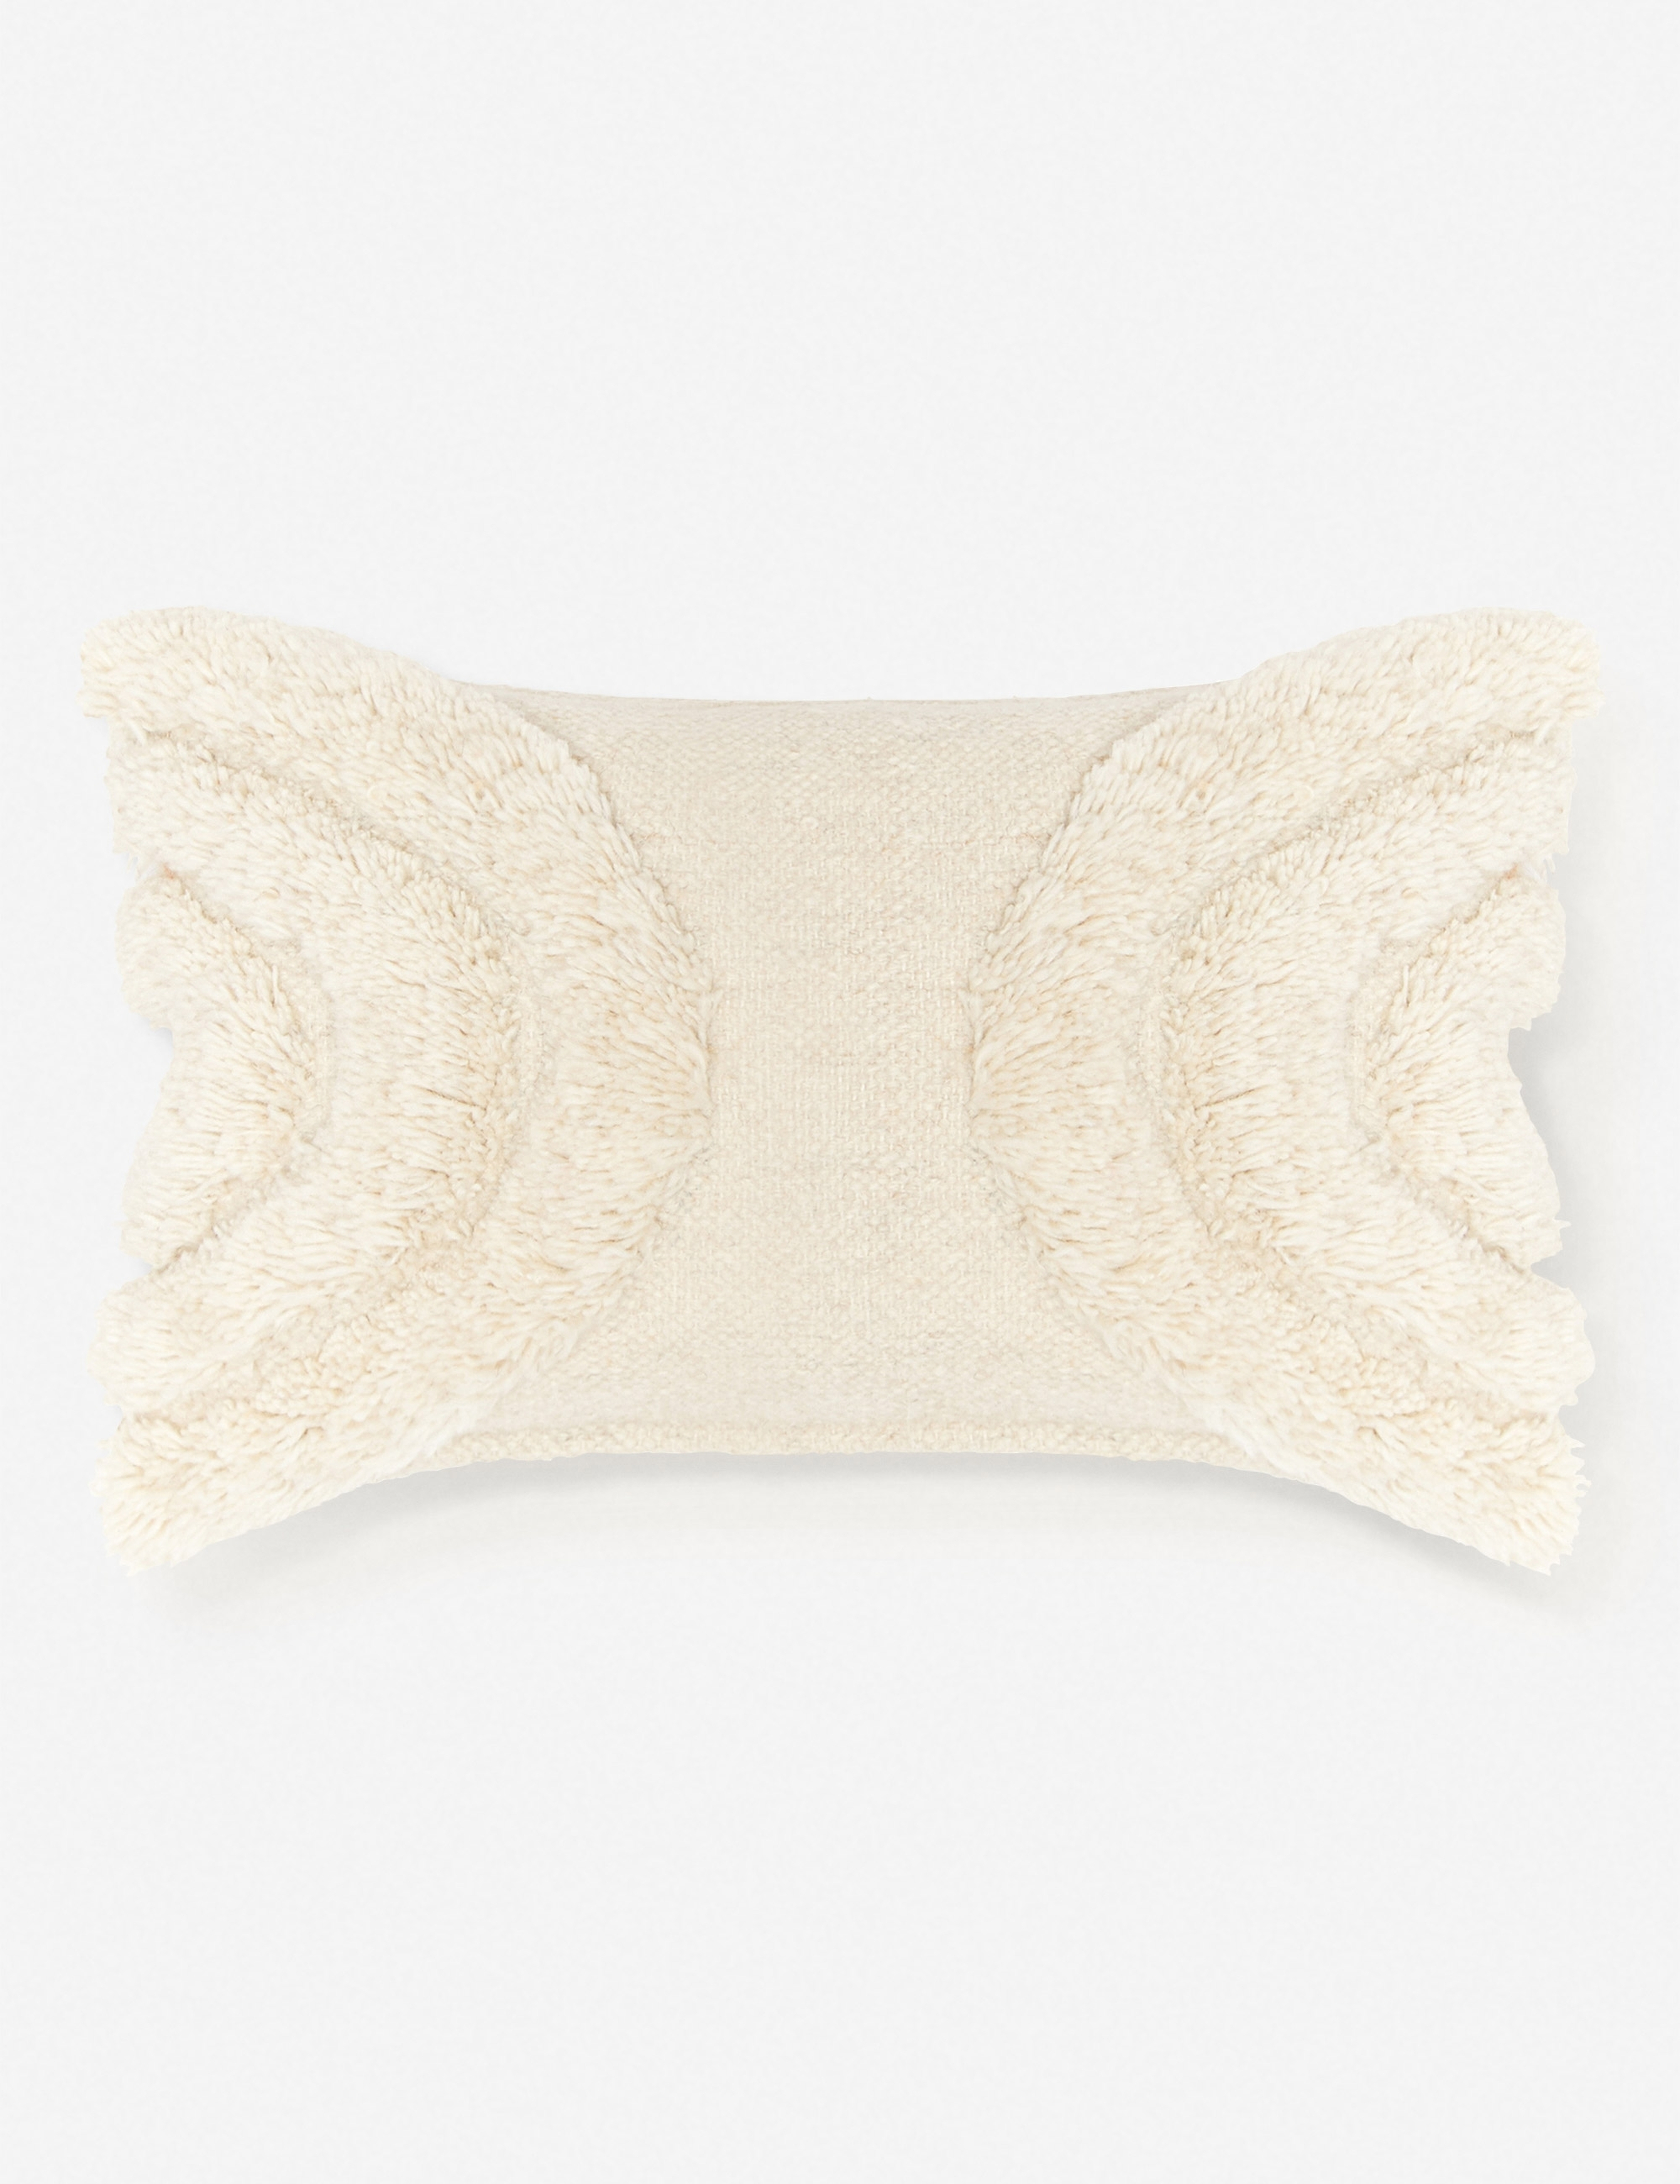 Arches Lumbar Pillow, Natural By Sarah Sherman Samuel - Lulu and Georgia